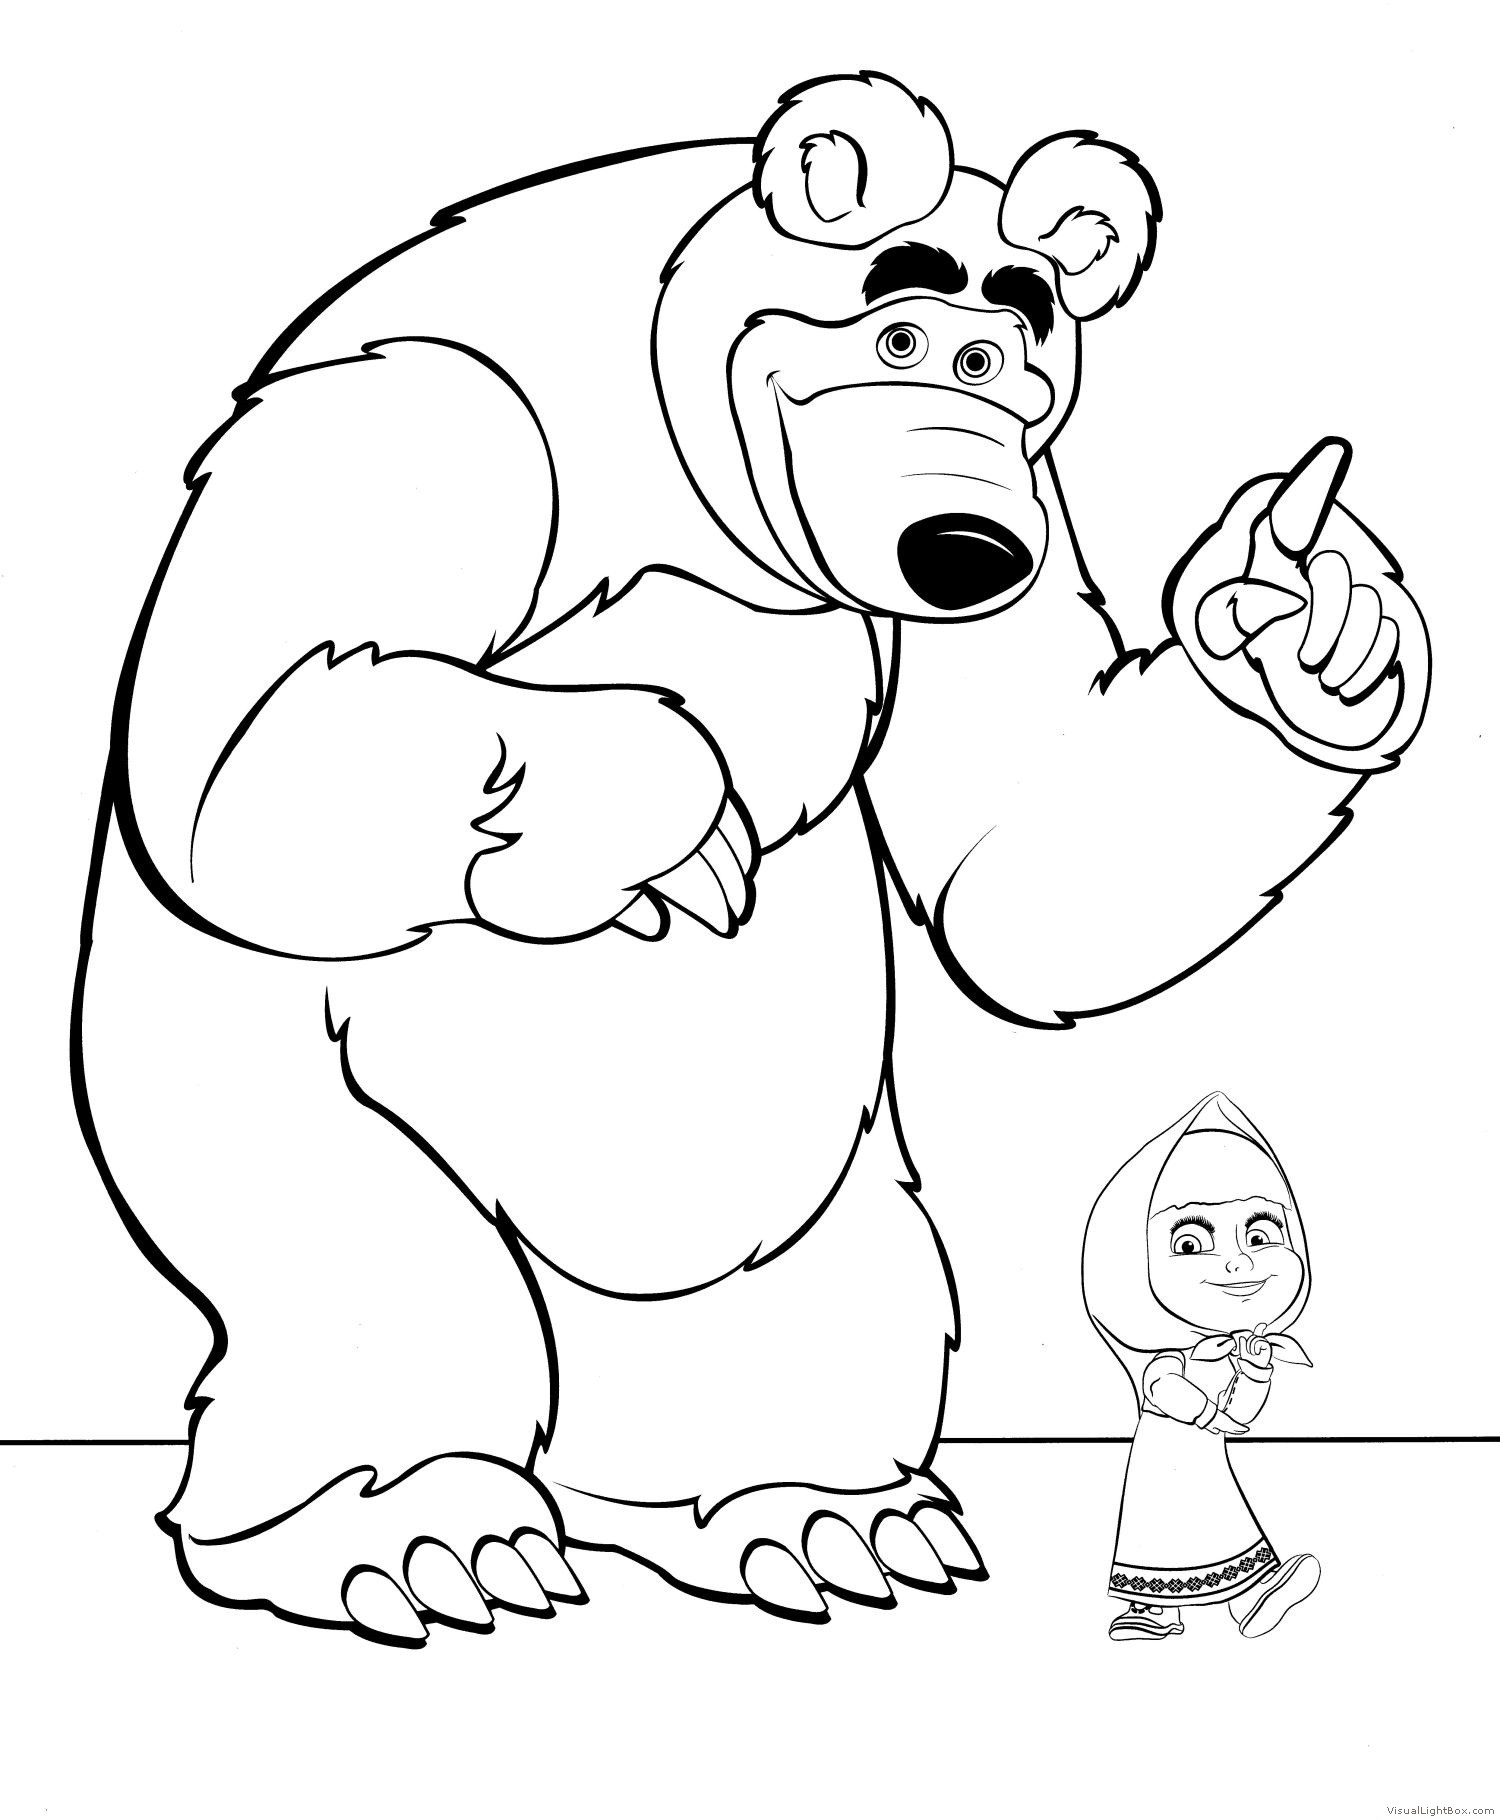 Маши черное белое. Раскраска. Маша и медведь. Медведь раскраска. Медведь раскраска для детей. Рисунок медведя для раскрашивания.